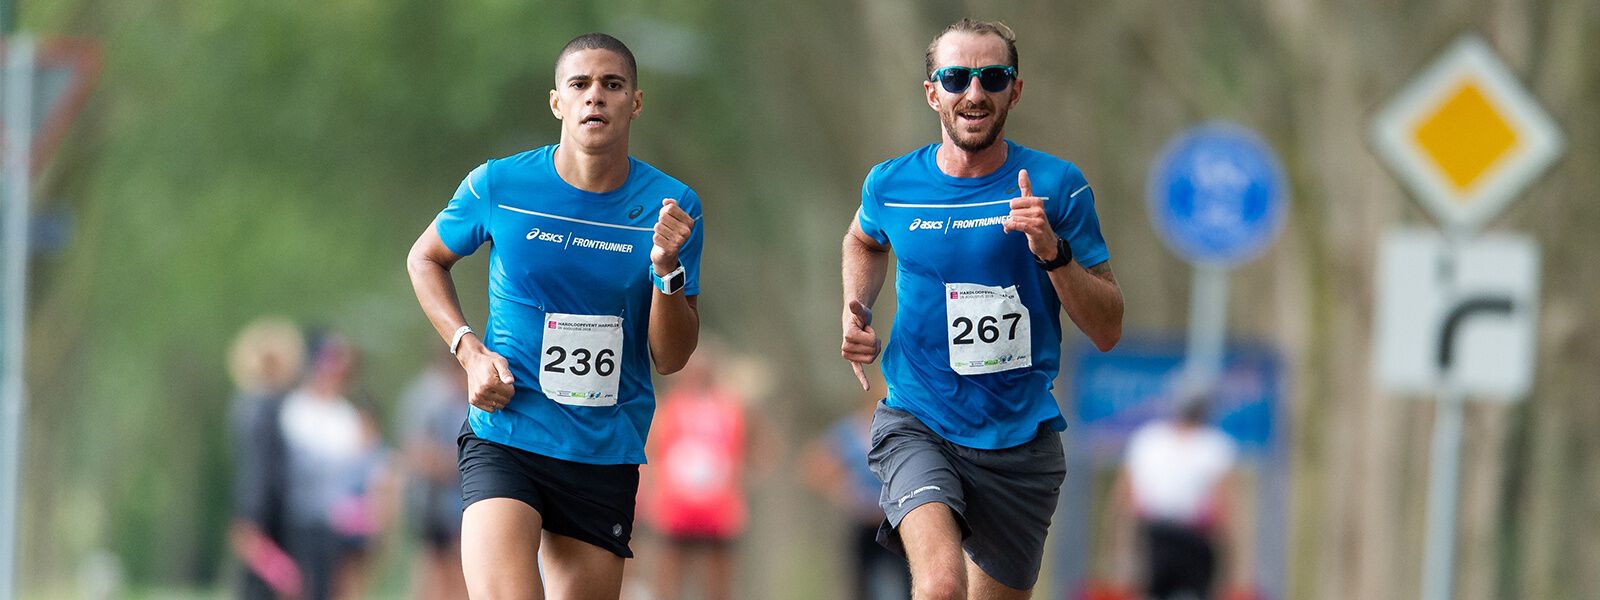 Maîtriser votre vitesse de course pendant un marathon | ASICS